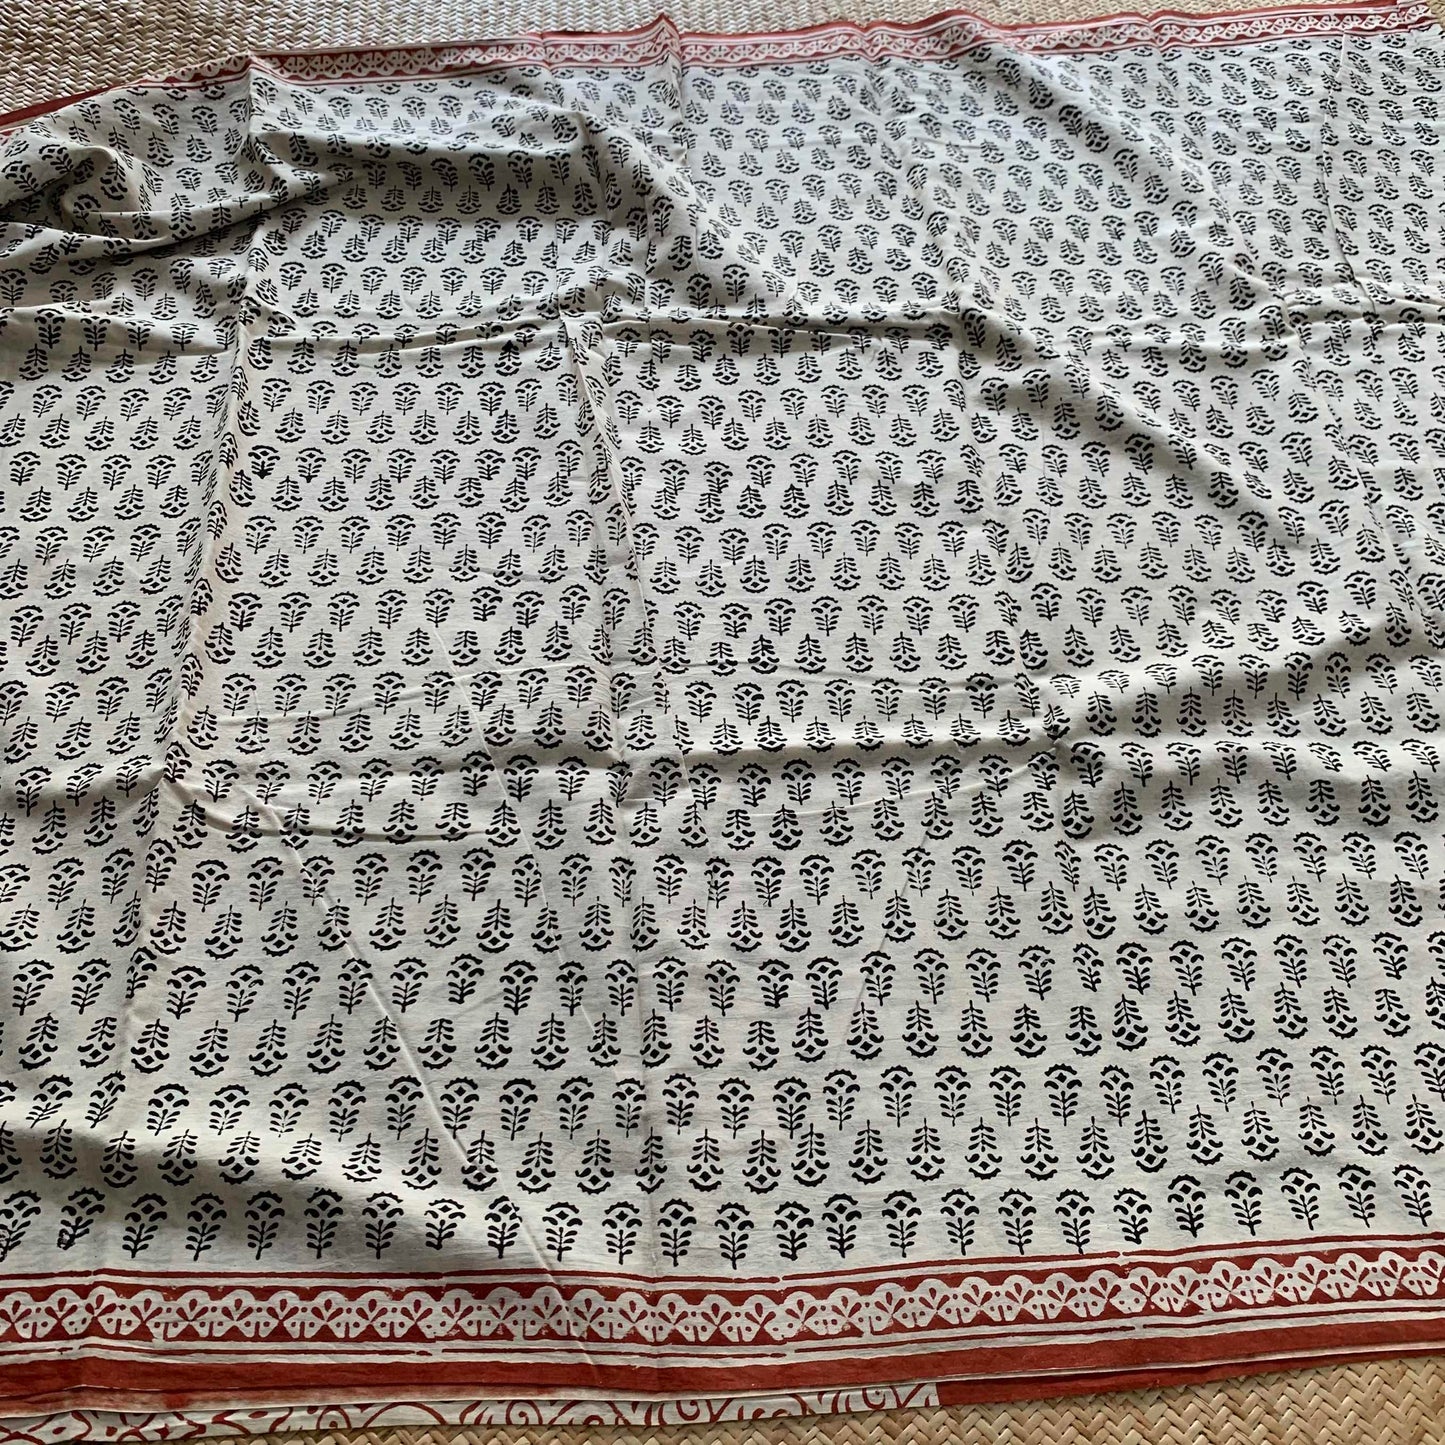 Mul Mul Cotton saree, Bagru Hand Block Printed, Beige